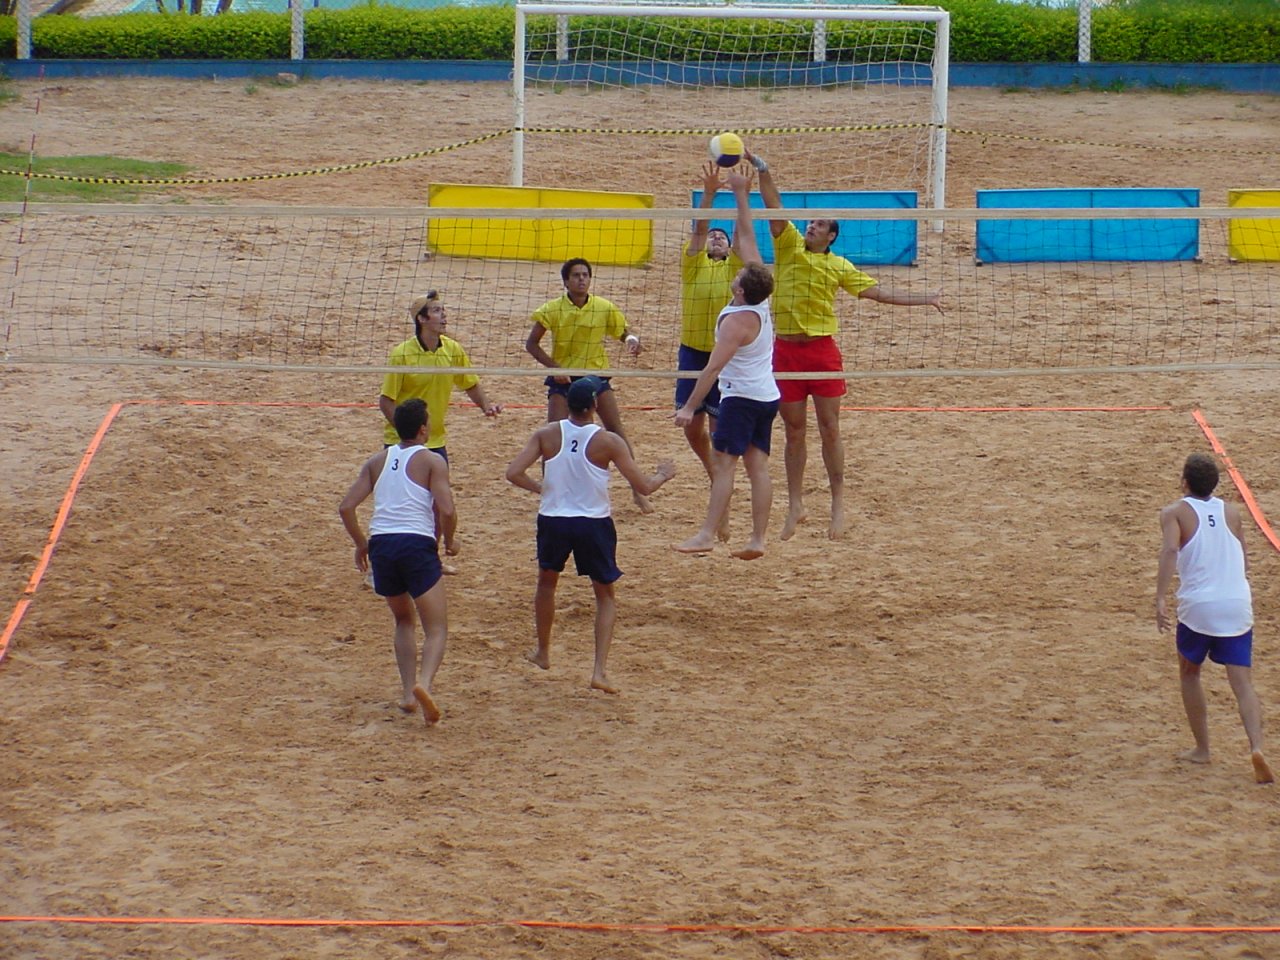 Momento de disputa em quadra durante o campeonato